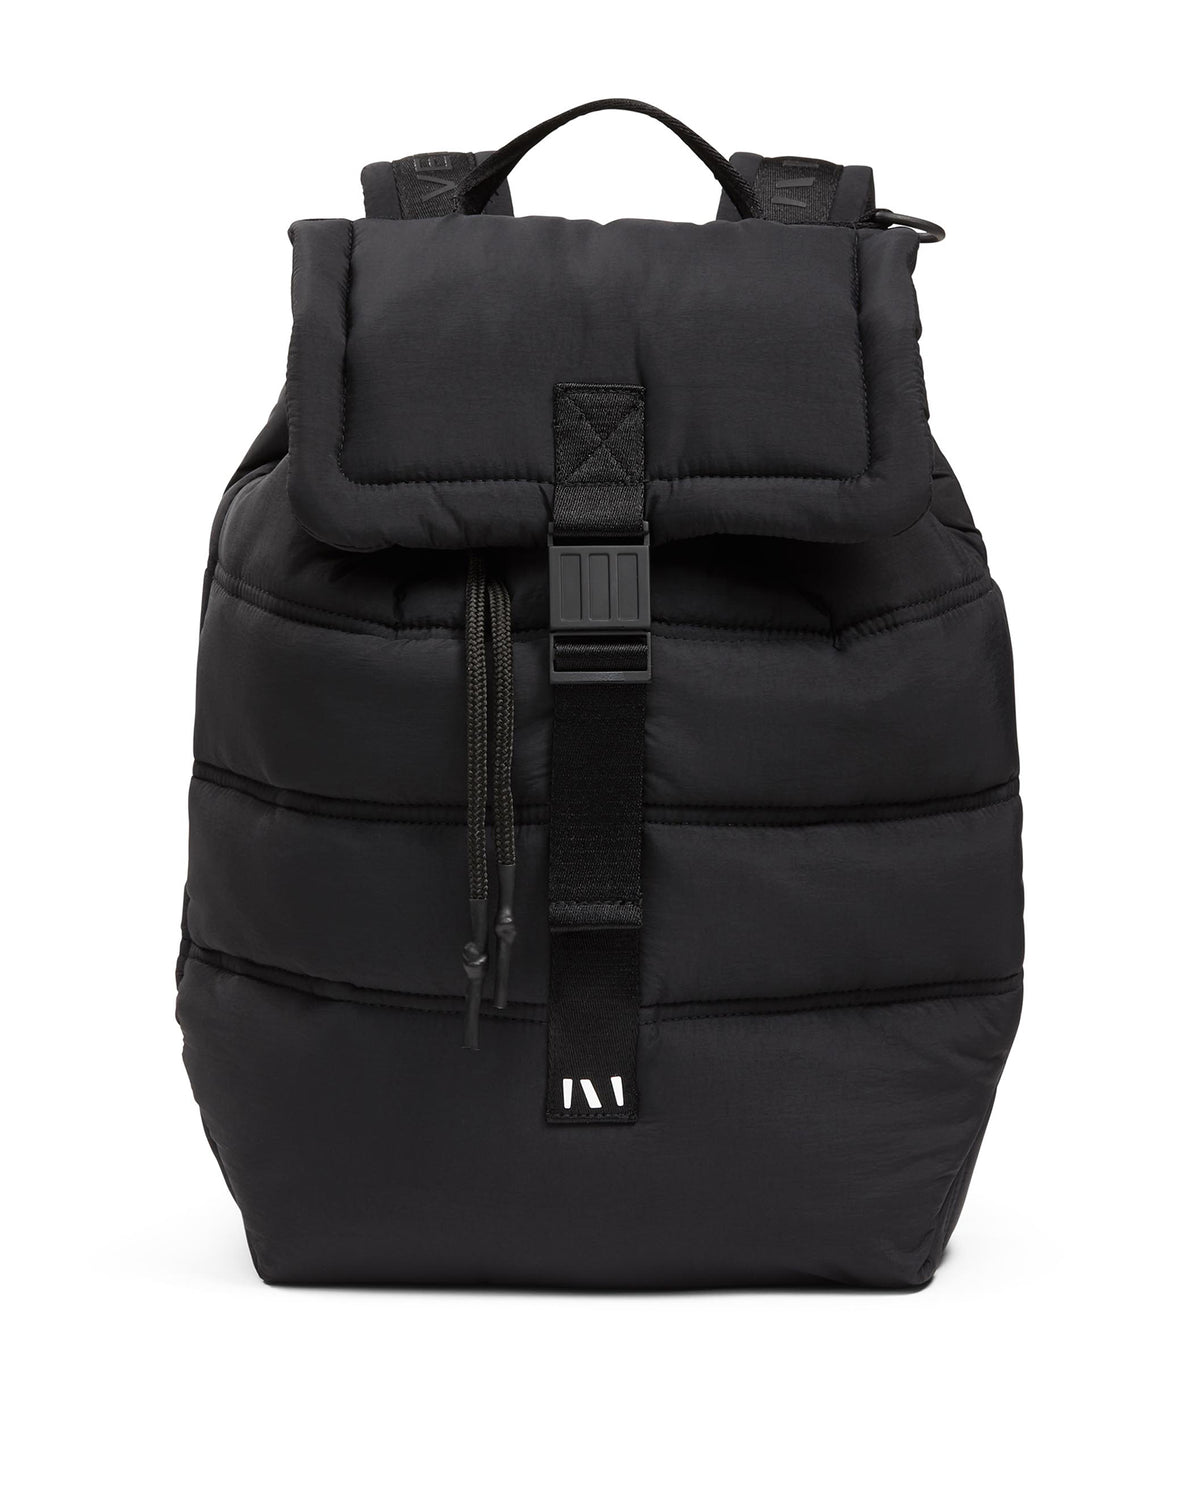 Puffer Backpack - Black